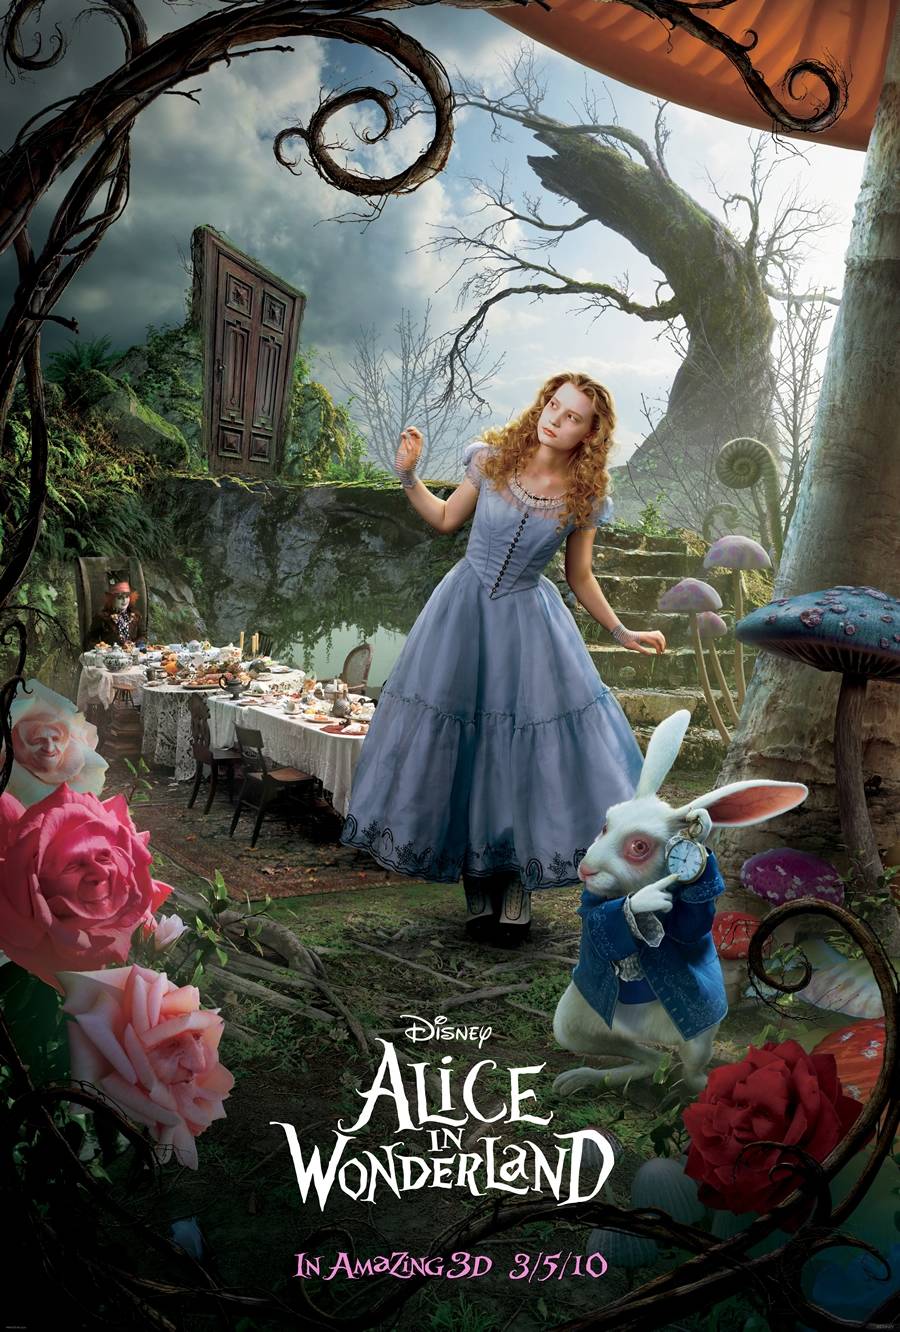 تحميل فيلم المغامرة والفنتازيا الرائع Alice in Wonderland 2010 مترجم بجودة DVDRip للنجم "جوني ديب" Alice-10